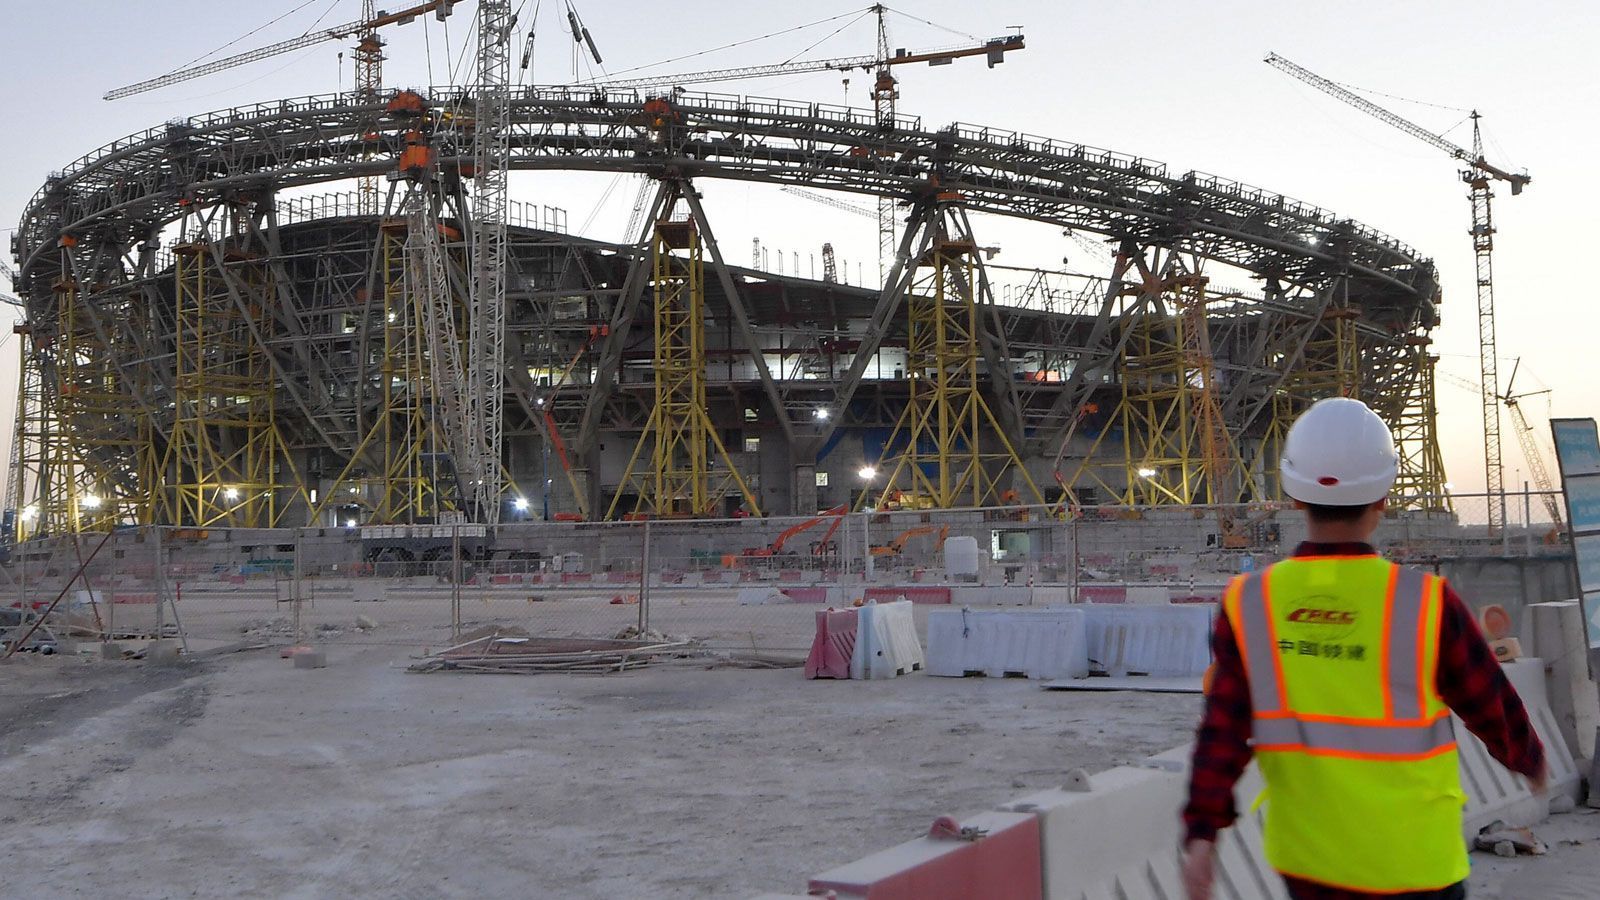 
                <strong>7. April 2020</strong><br>
                Katar weist die in den US-Gerichtsunterlagen enthaltenen Vorwürfe "auf das Schärfste" zurück: "Trotz jahrelanger falscher Behauptungen wurden nie Beweise dafür vorgelegt, dass Katar die Rechte für die Ausrichtung der WM 2022 unethisch oder mit Mitteln gewonnen hat, die gegen die strengen Bewerbungsregeln der FIFA verstoßen."
              